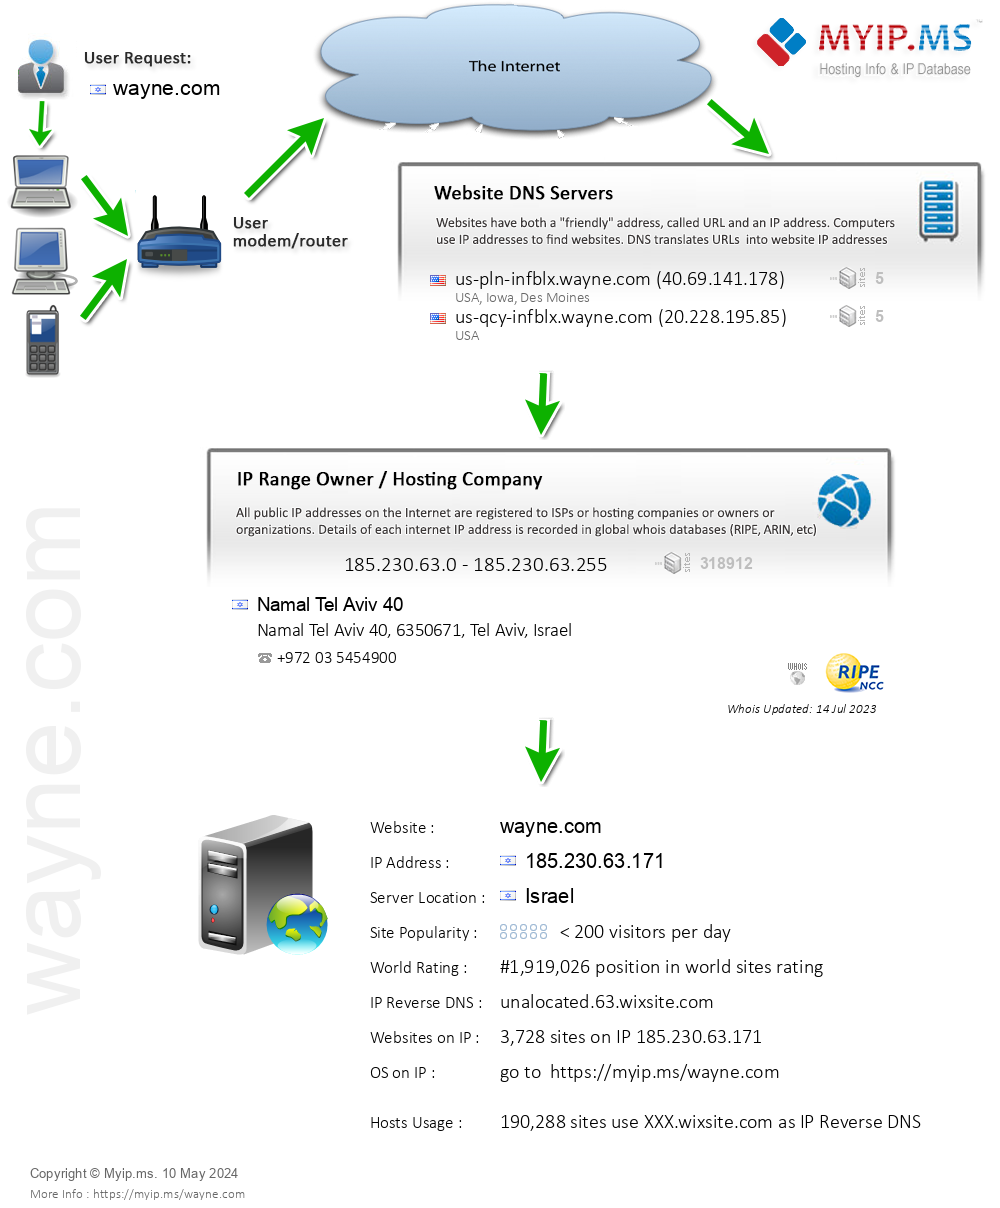 Wayne.com - Website Hosting Visual IP Diagram